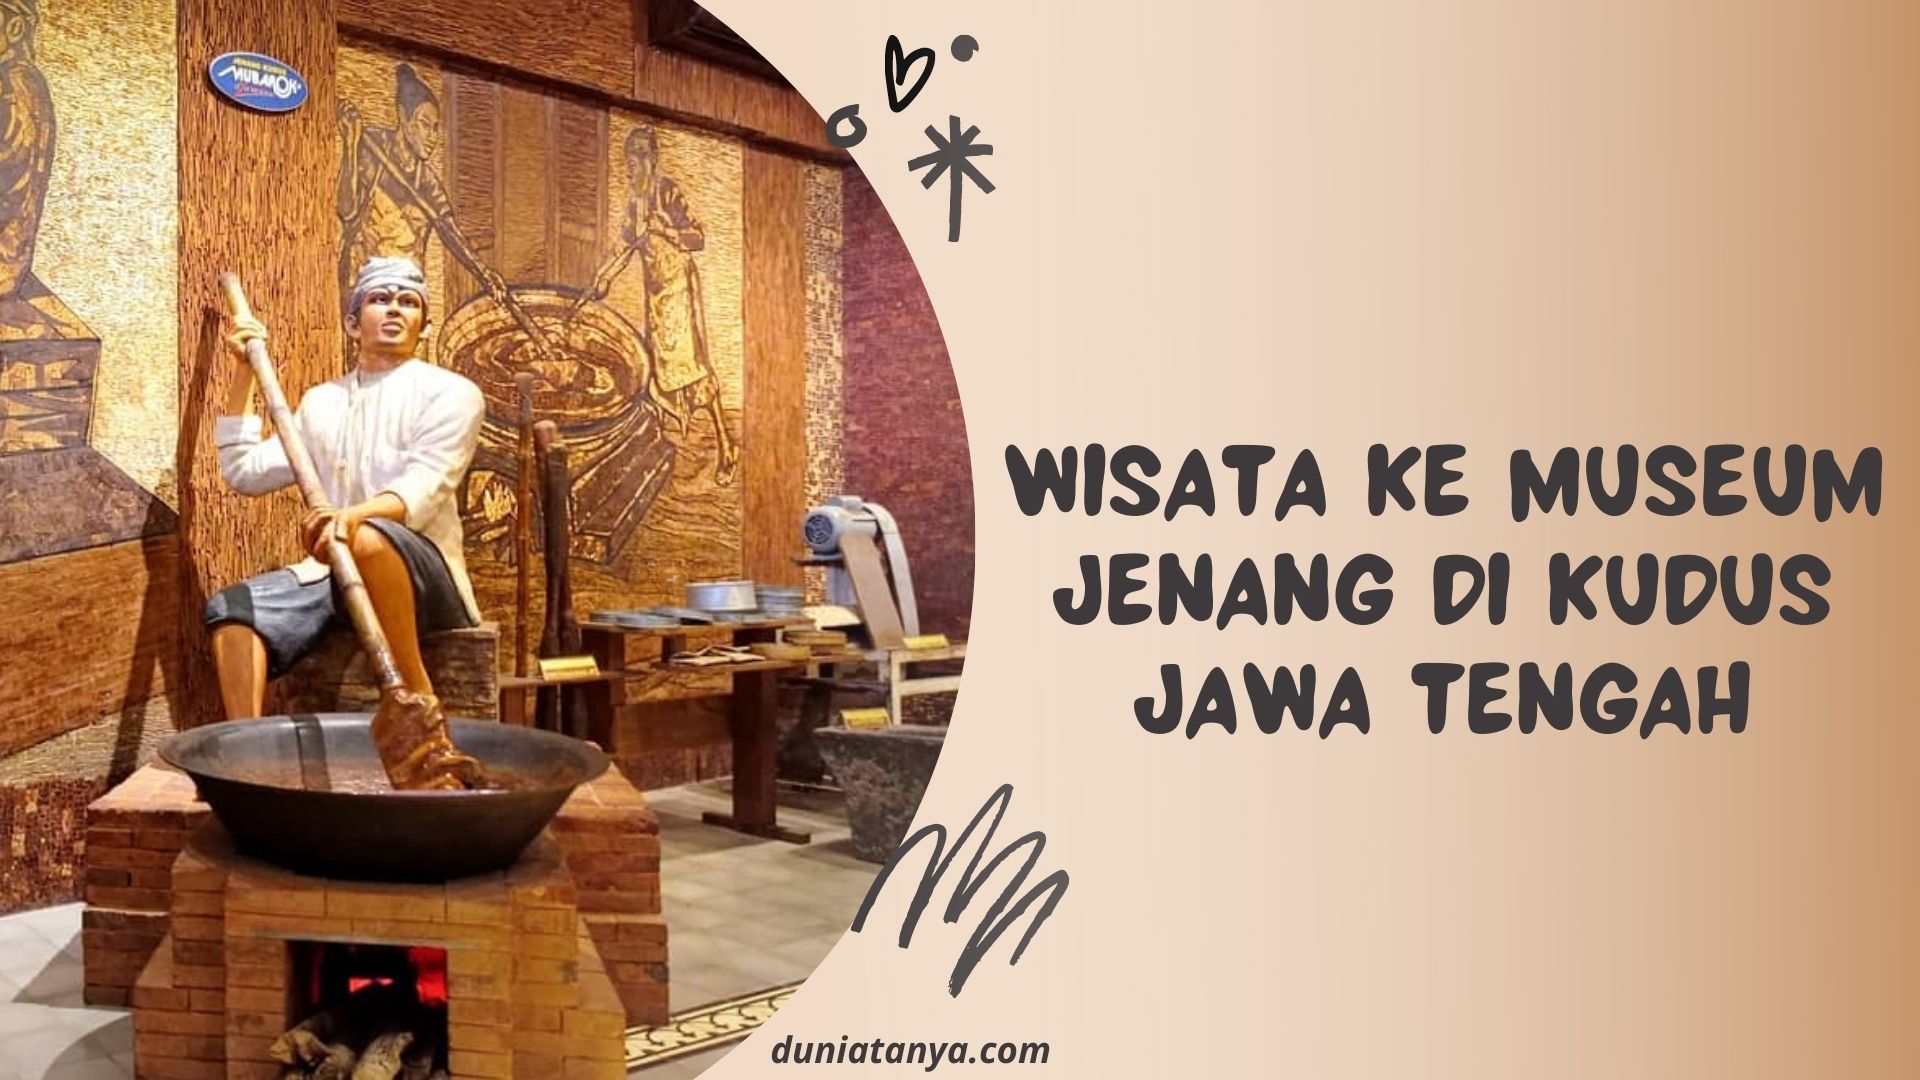 You are currently viewing Wisata Ke Museum Jenang Di Kudus Jawa Tengah